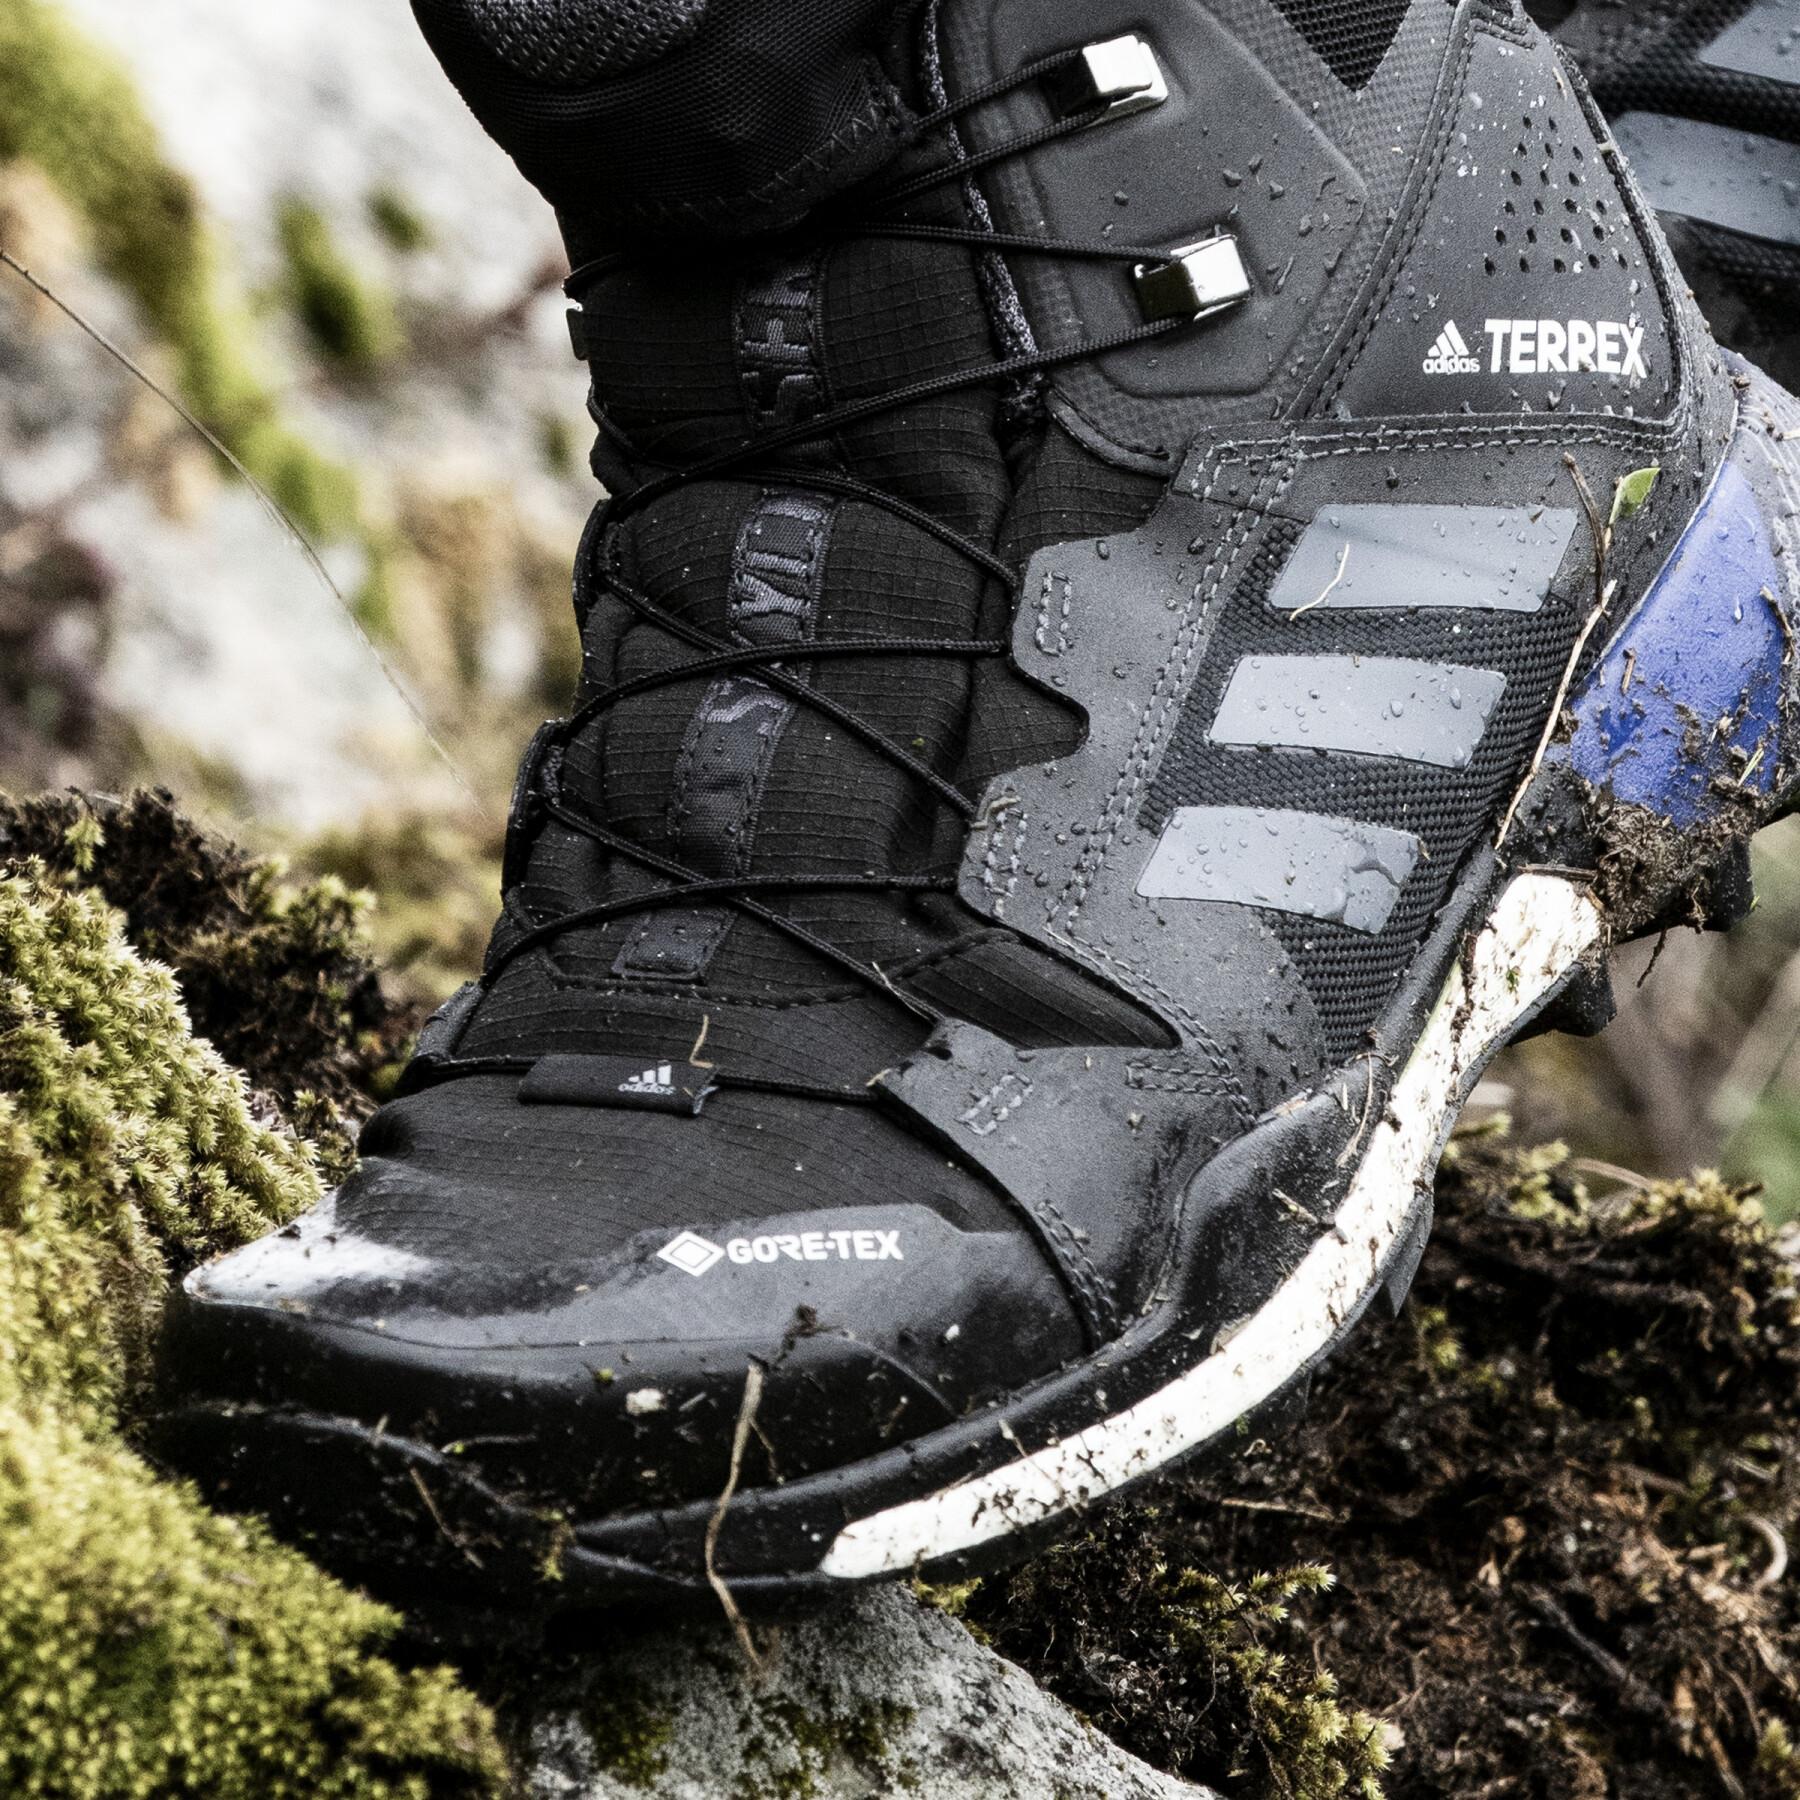 Trailrunning-Schuhe für Frauen adidas Terrex Skychaser XT Mid Gtx